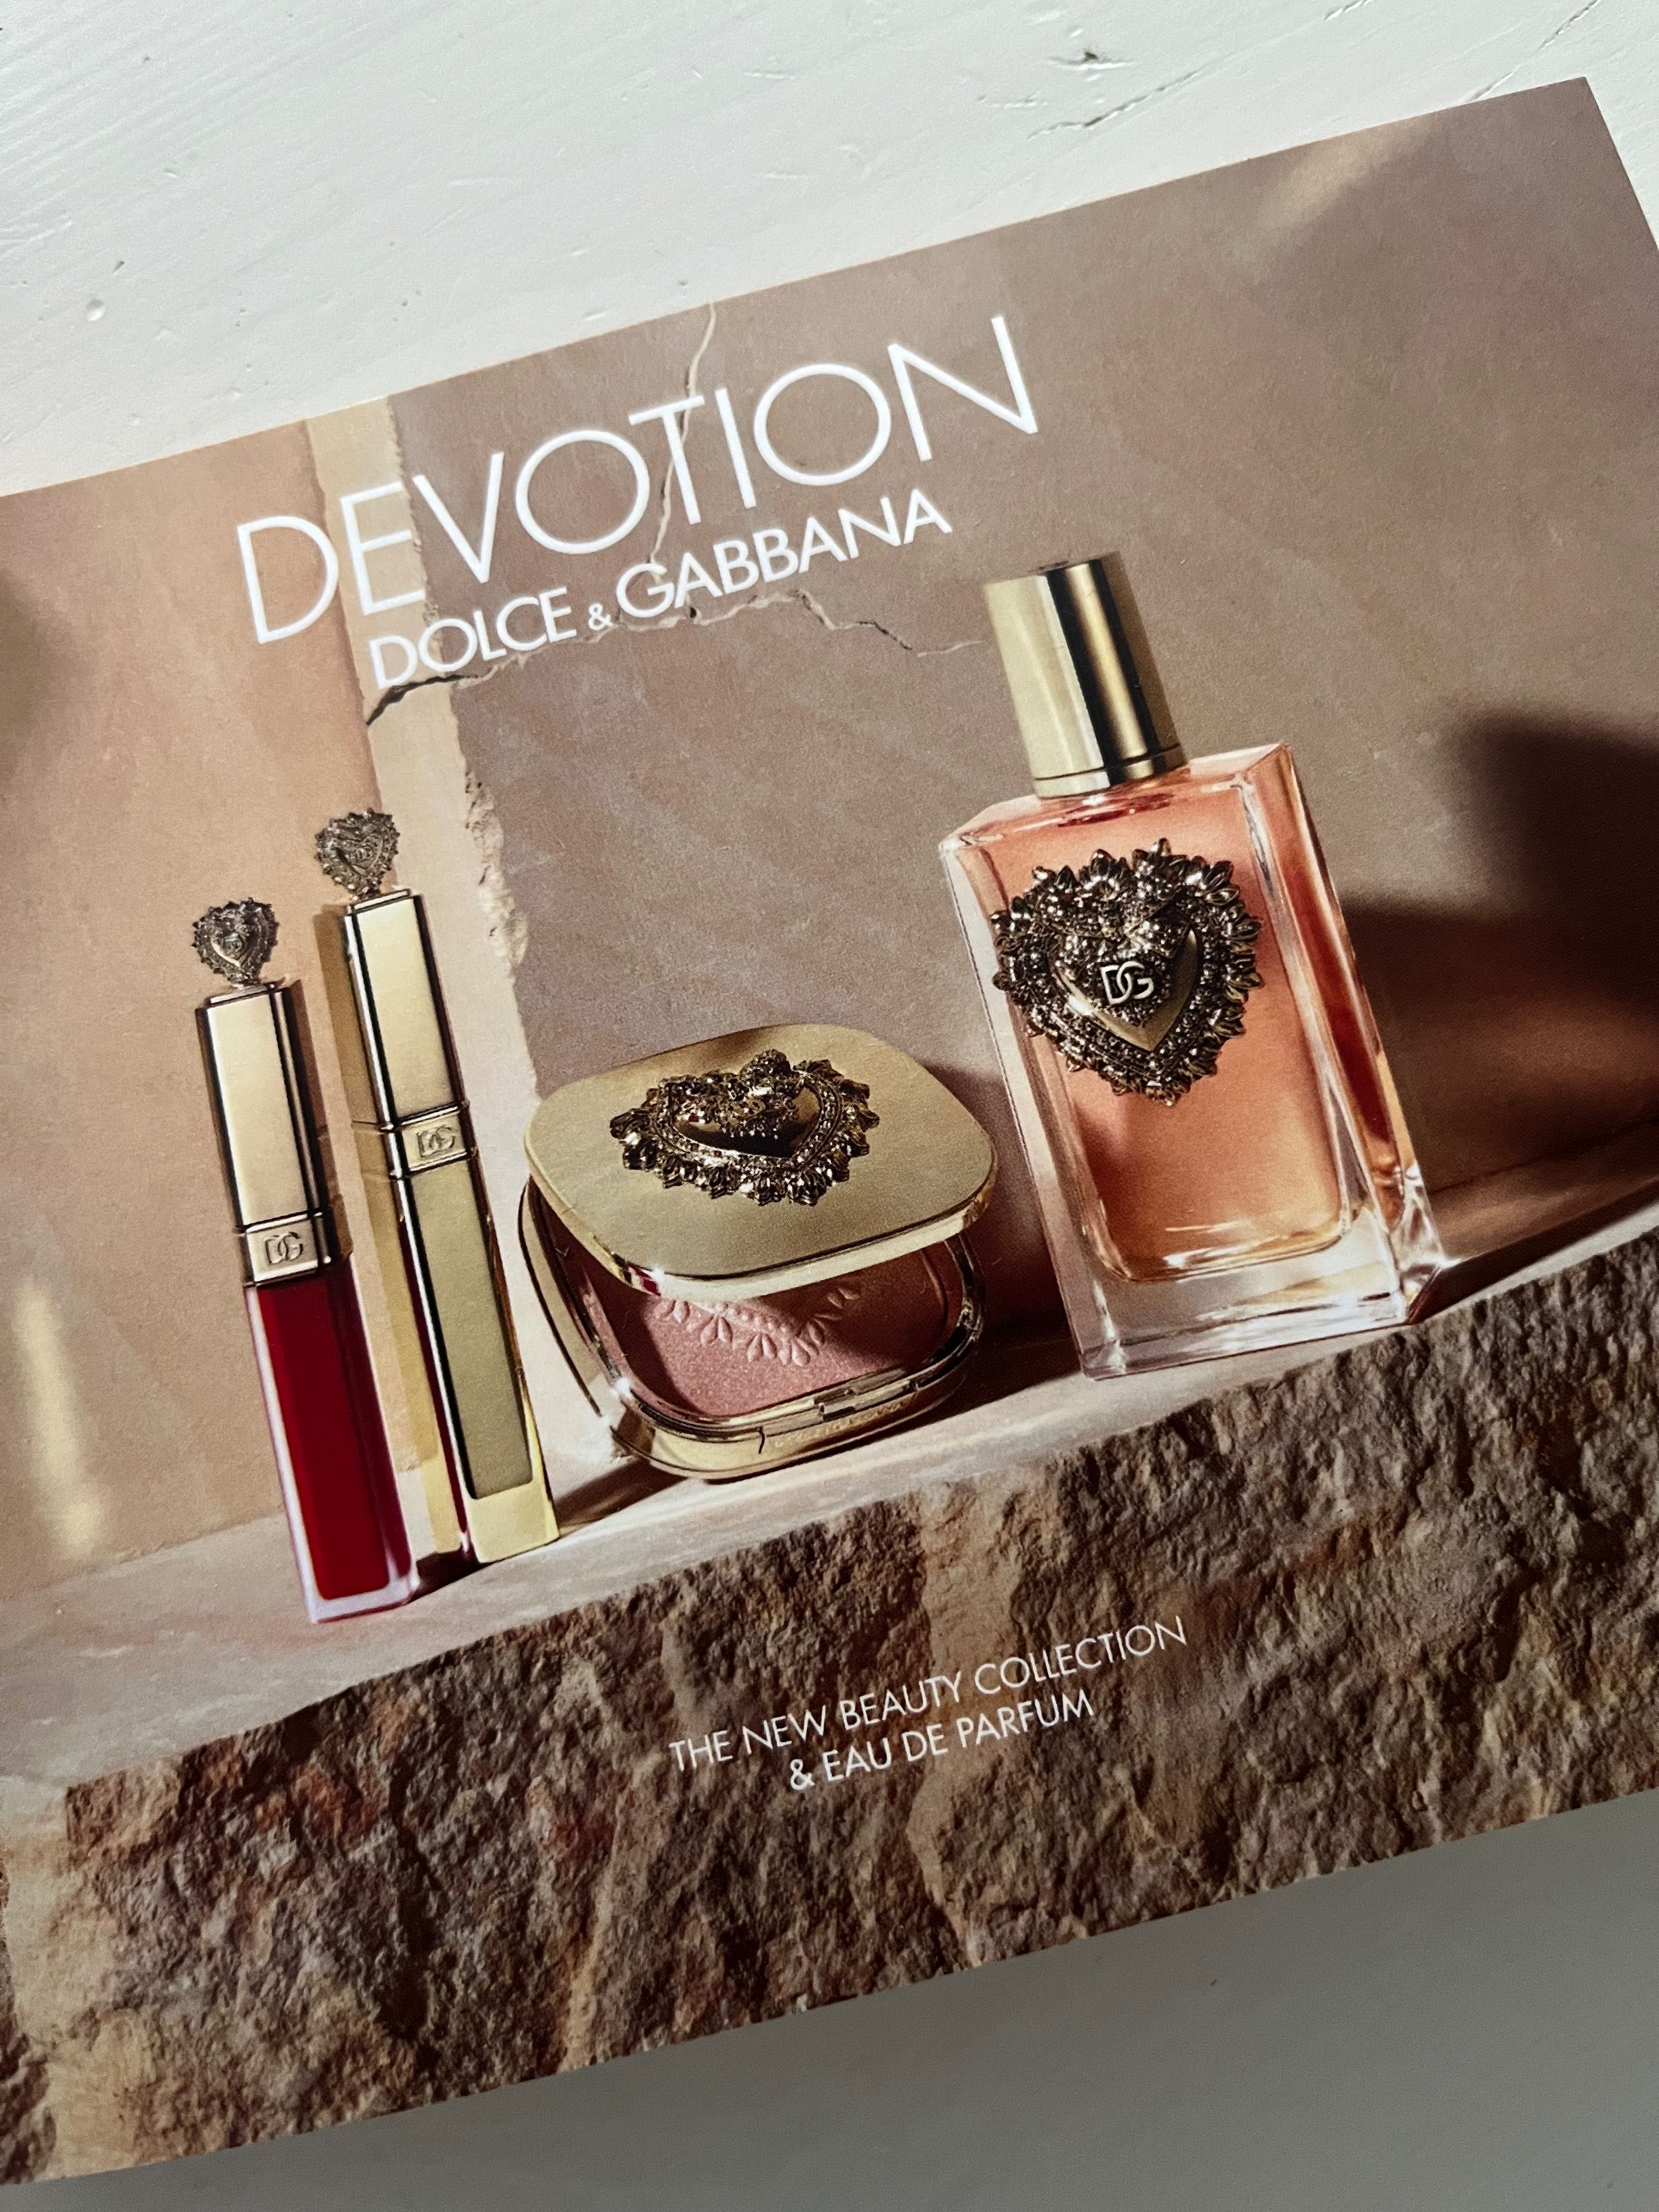 Dolce & Gabbana DEVOTION - tusz do rzęs + perfumy